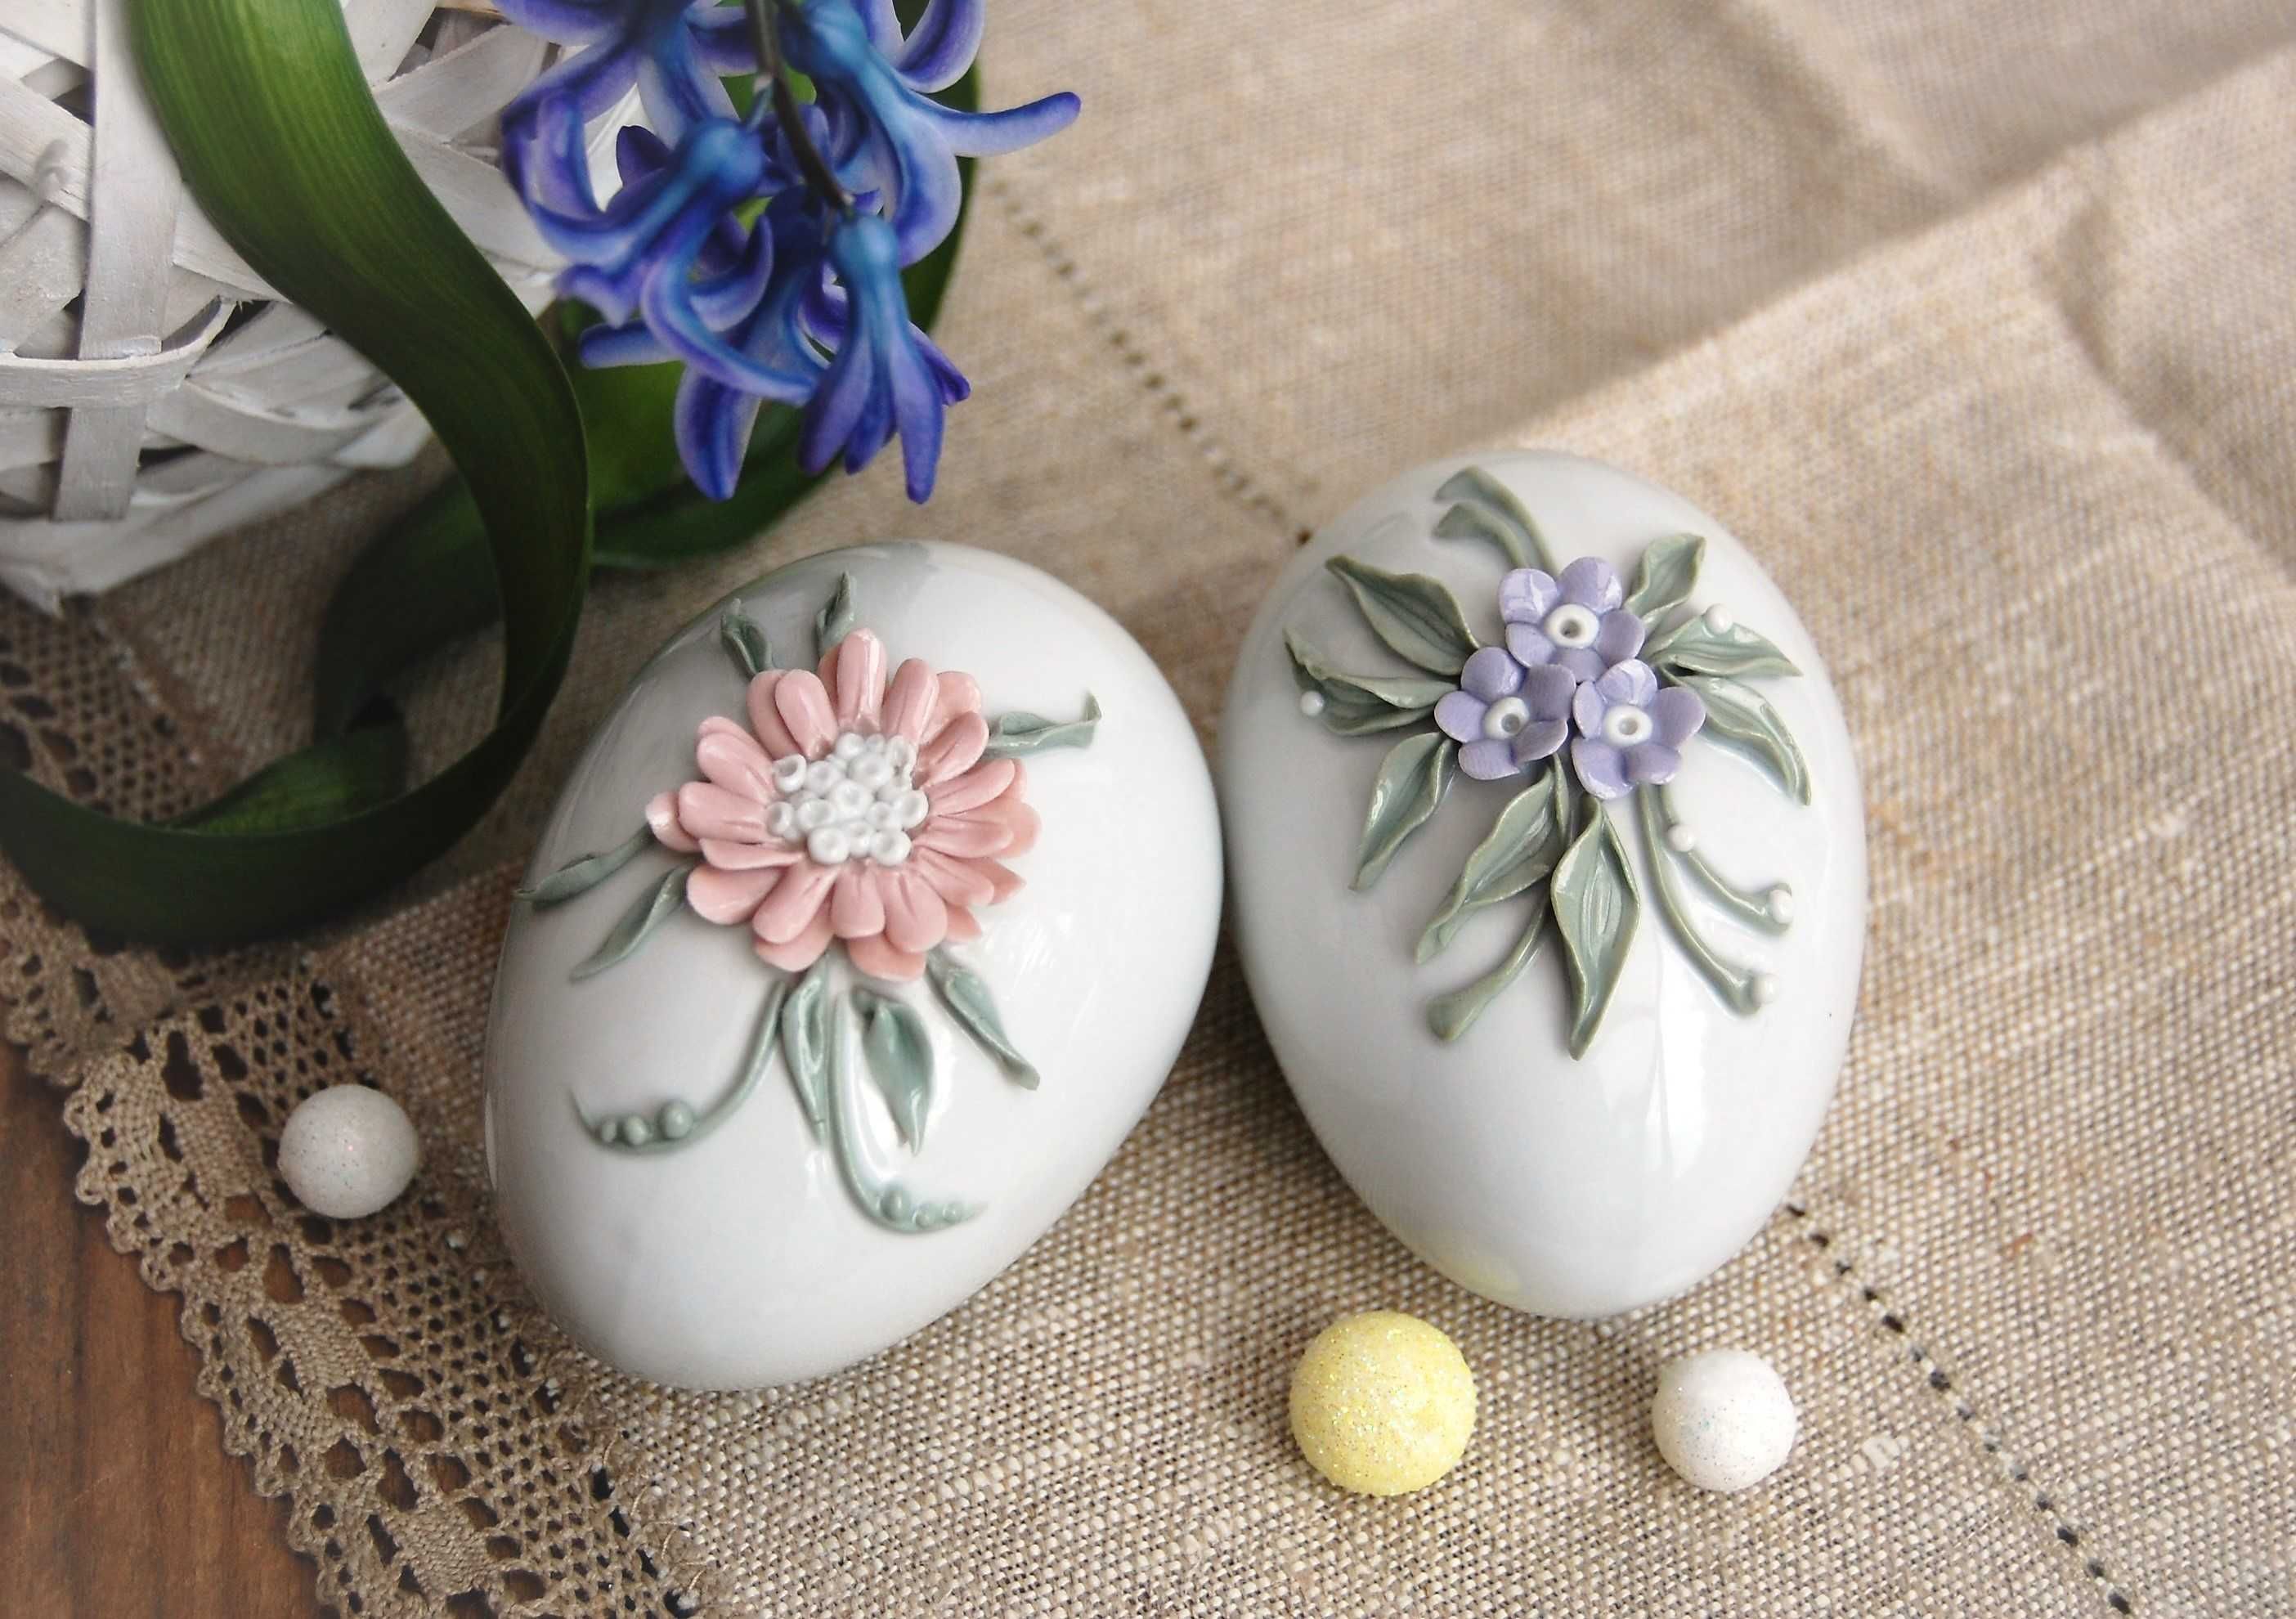 Jajko pisanka kwiaty relief porcelana Ćmielów vintage